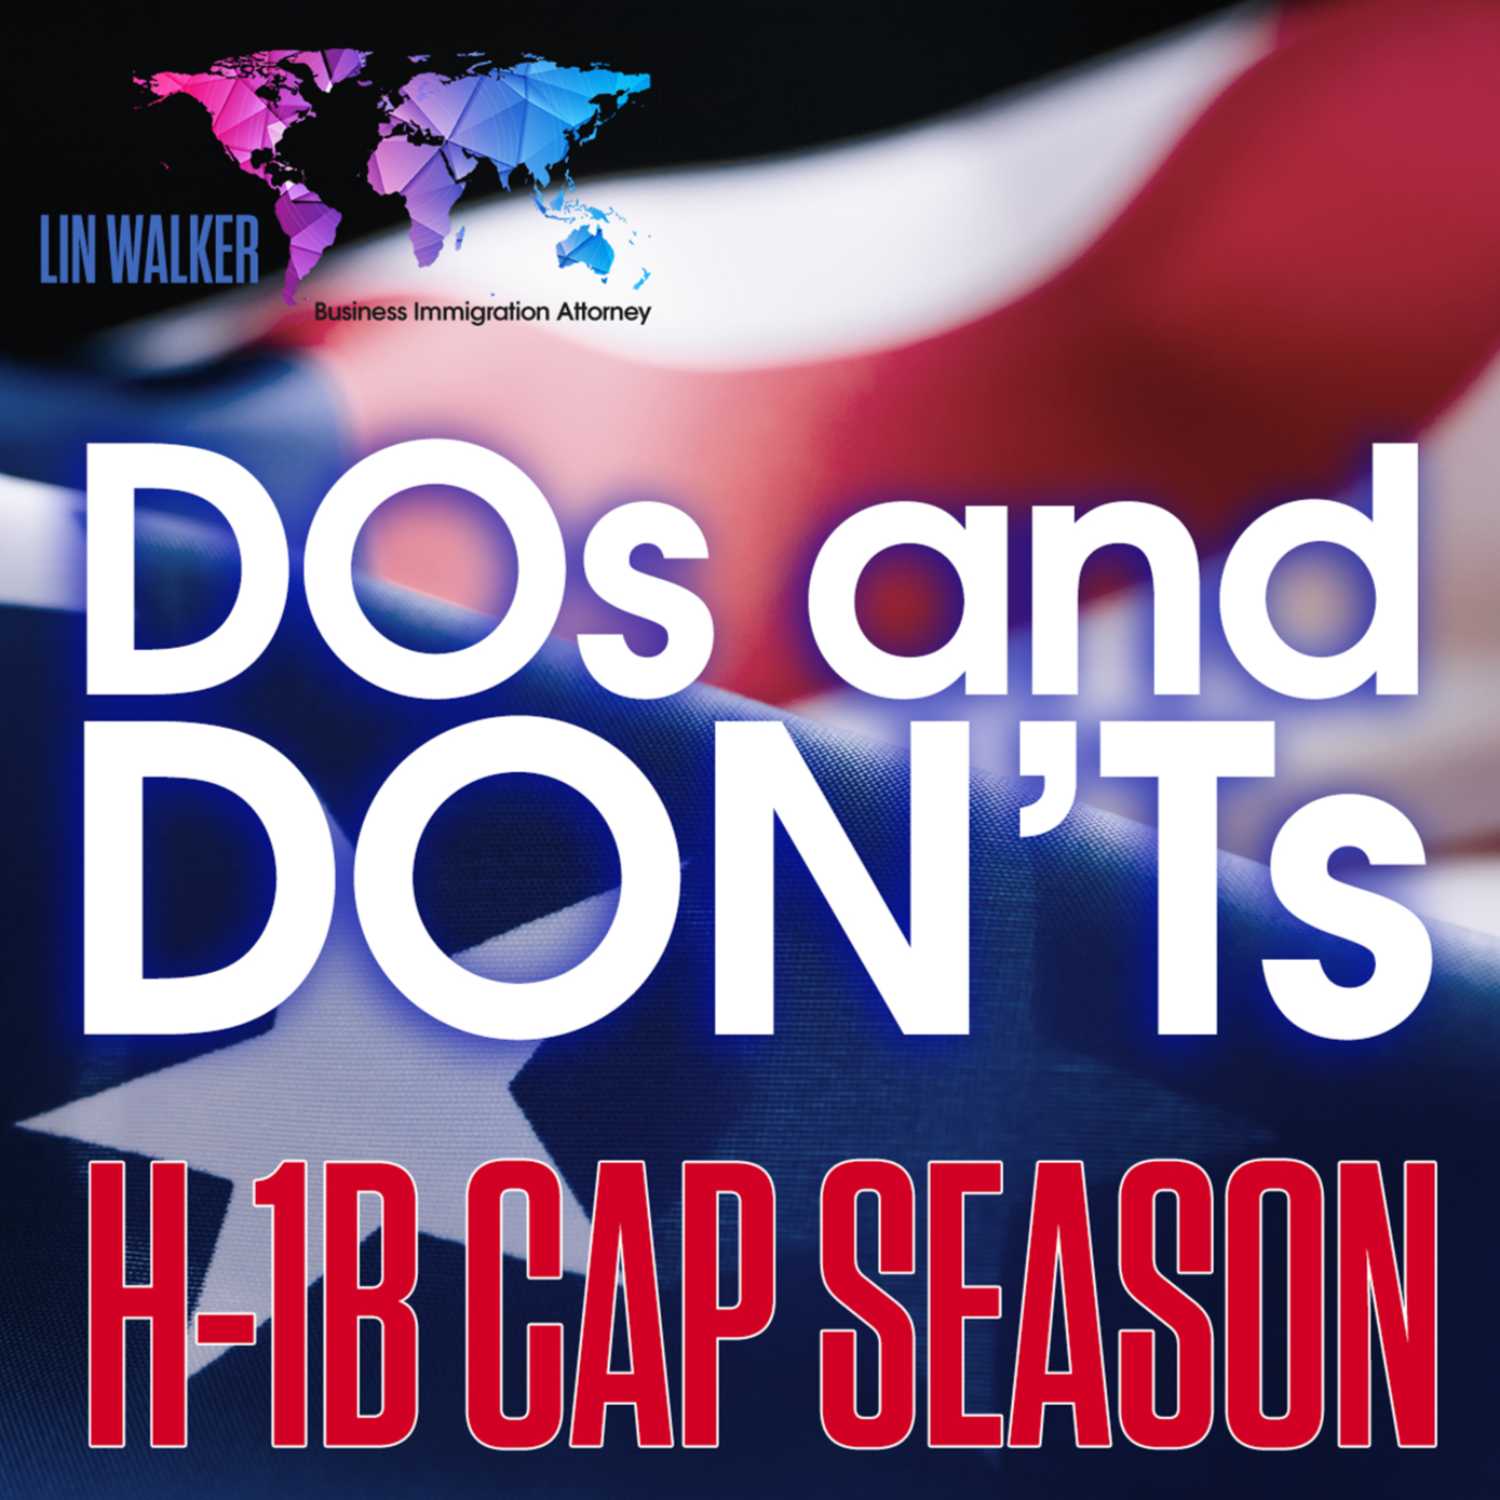 H-1B Cap Season: DOs and DON'Ts